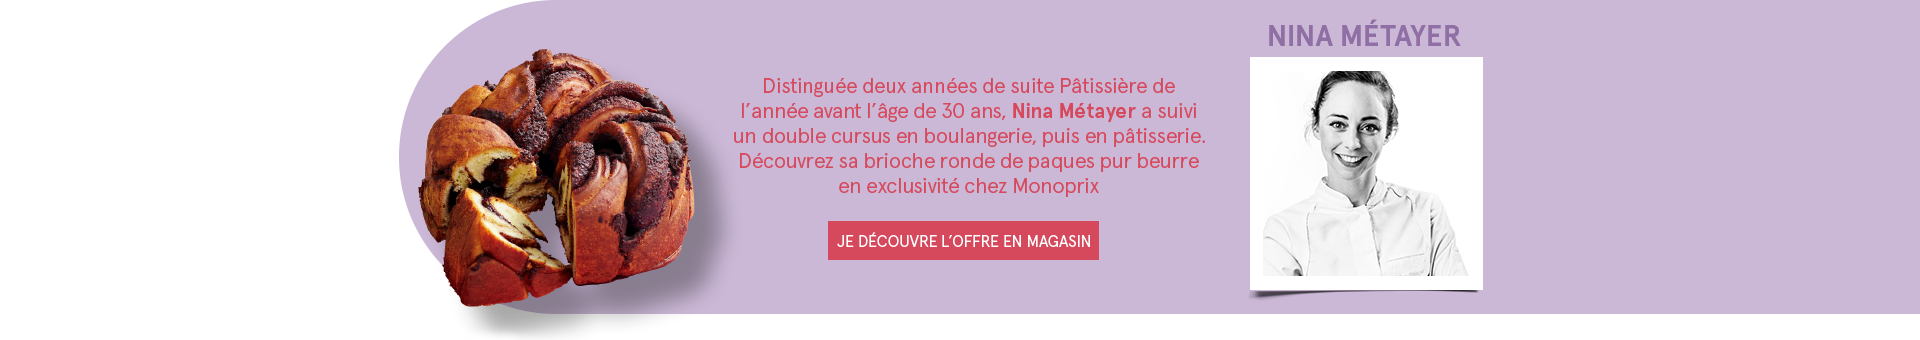 Nina Métayer - Distinguée deux années de suite Pâtissière de l'année avant l'âge de 30 ans, Nina Métayer a suivi un double cursus en boulangerie, puis en pâtisserie. Découvrez sa brioche ronde de paques pur beurre en exclusivité chez Monoprix - JE DÉCOUVRE L'OFFRE EN MAGASIN